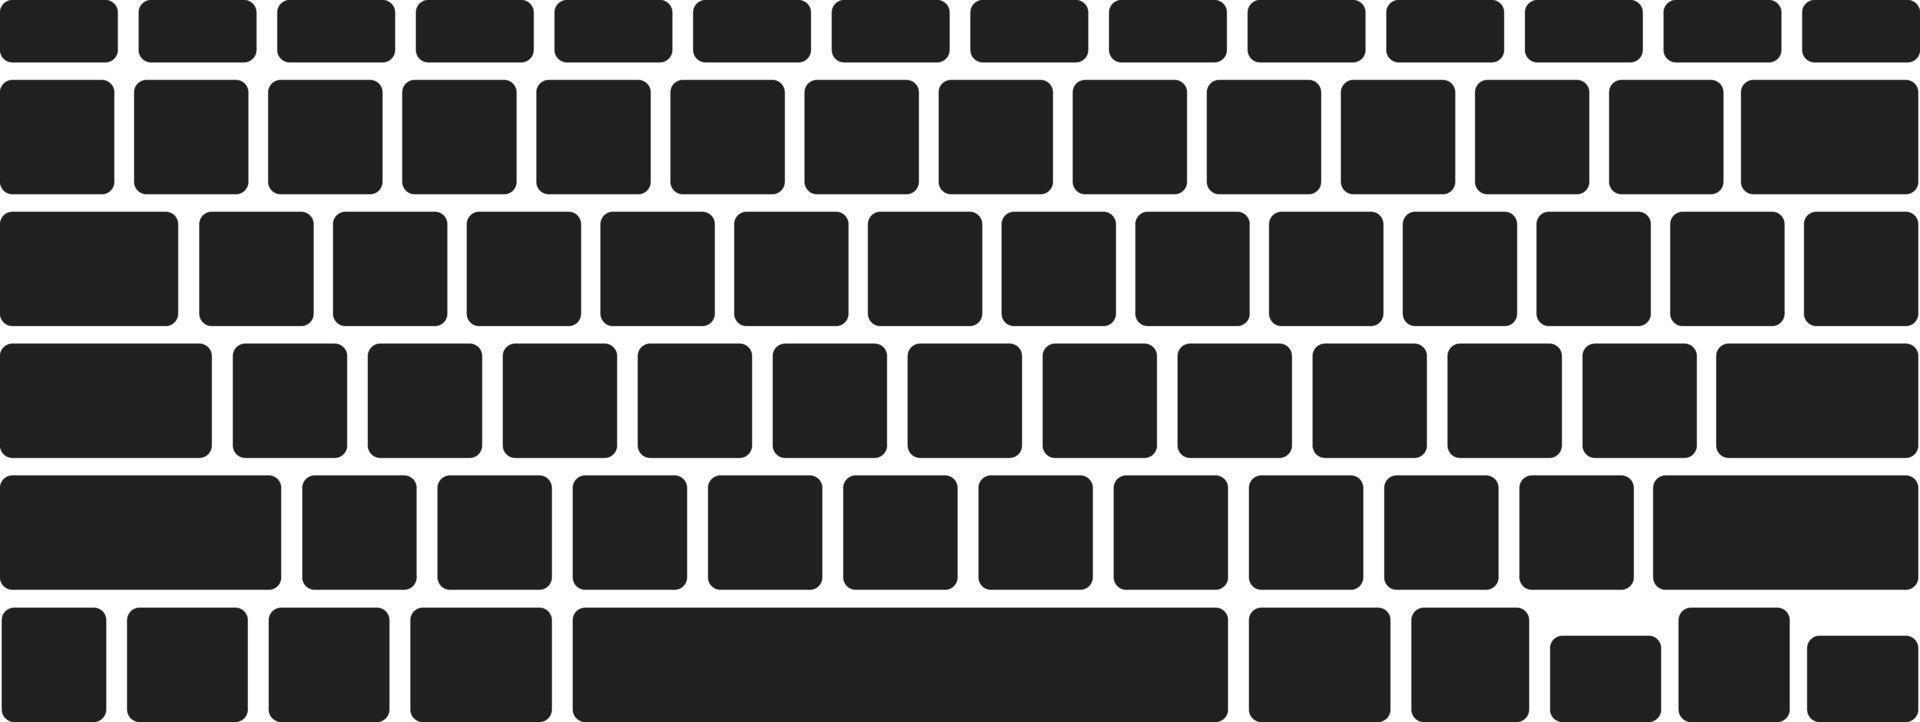 ícone do teclado do computador vetor